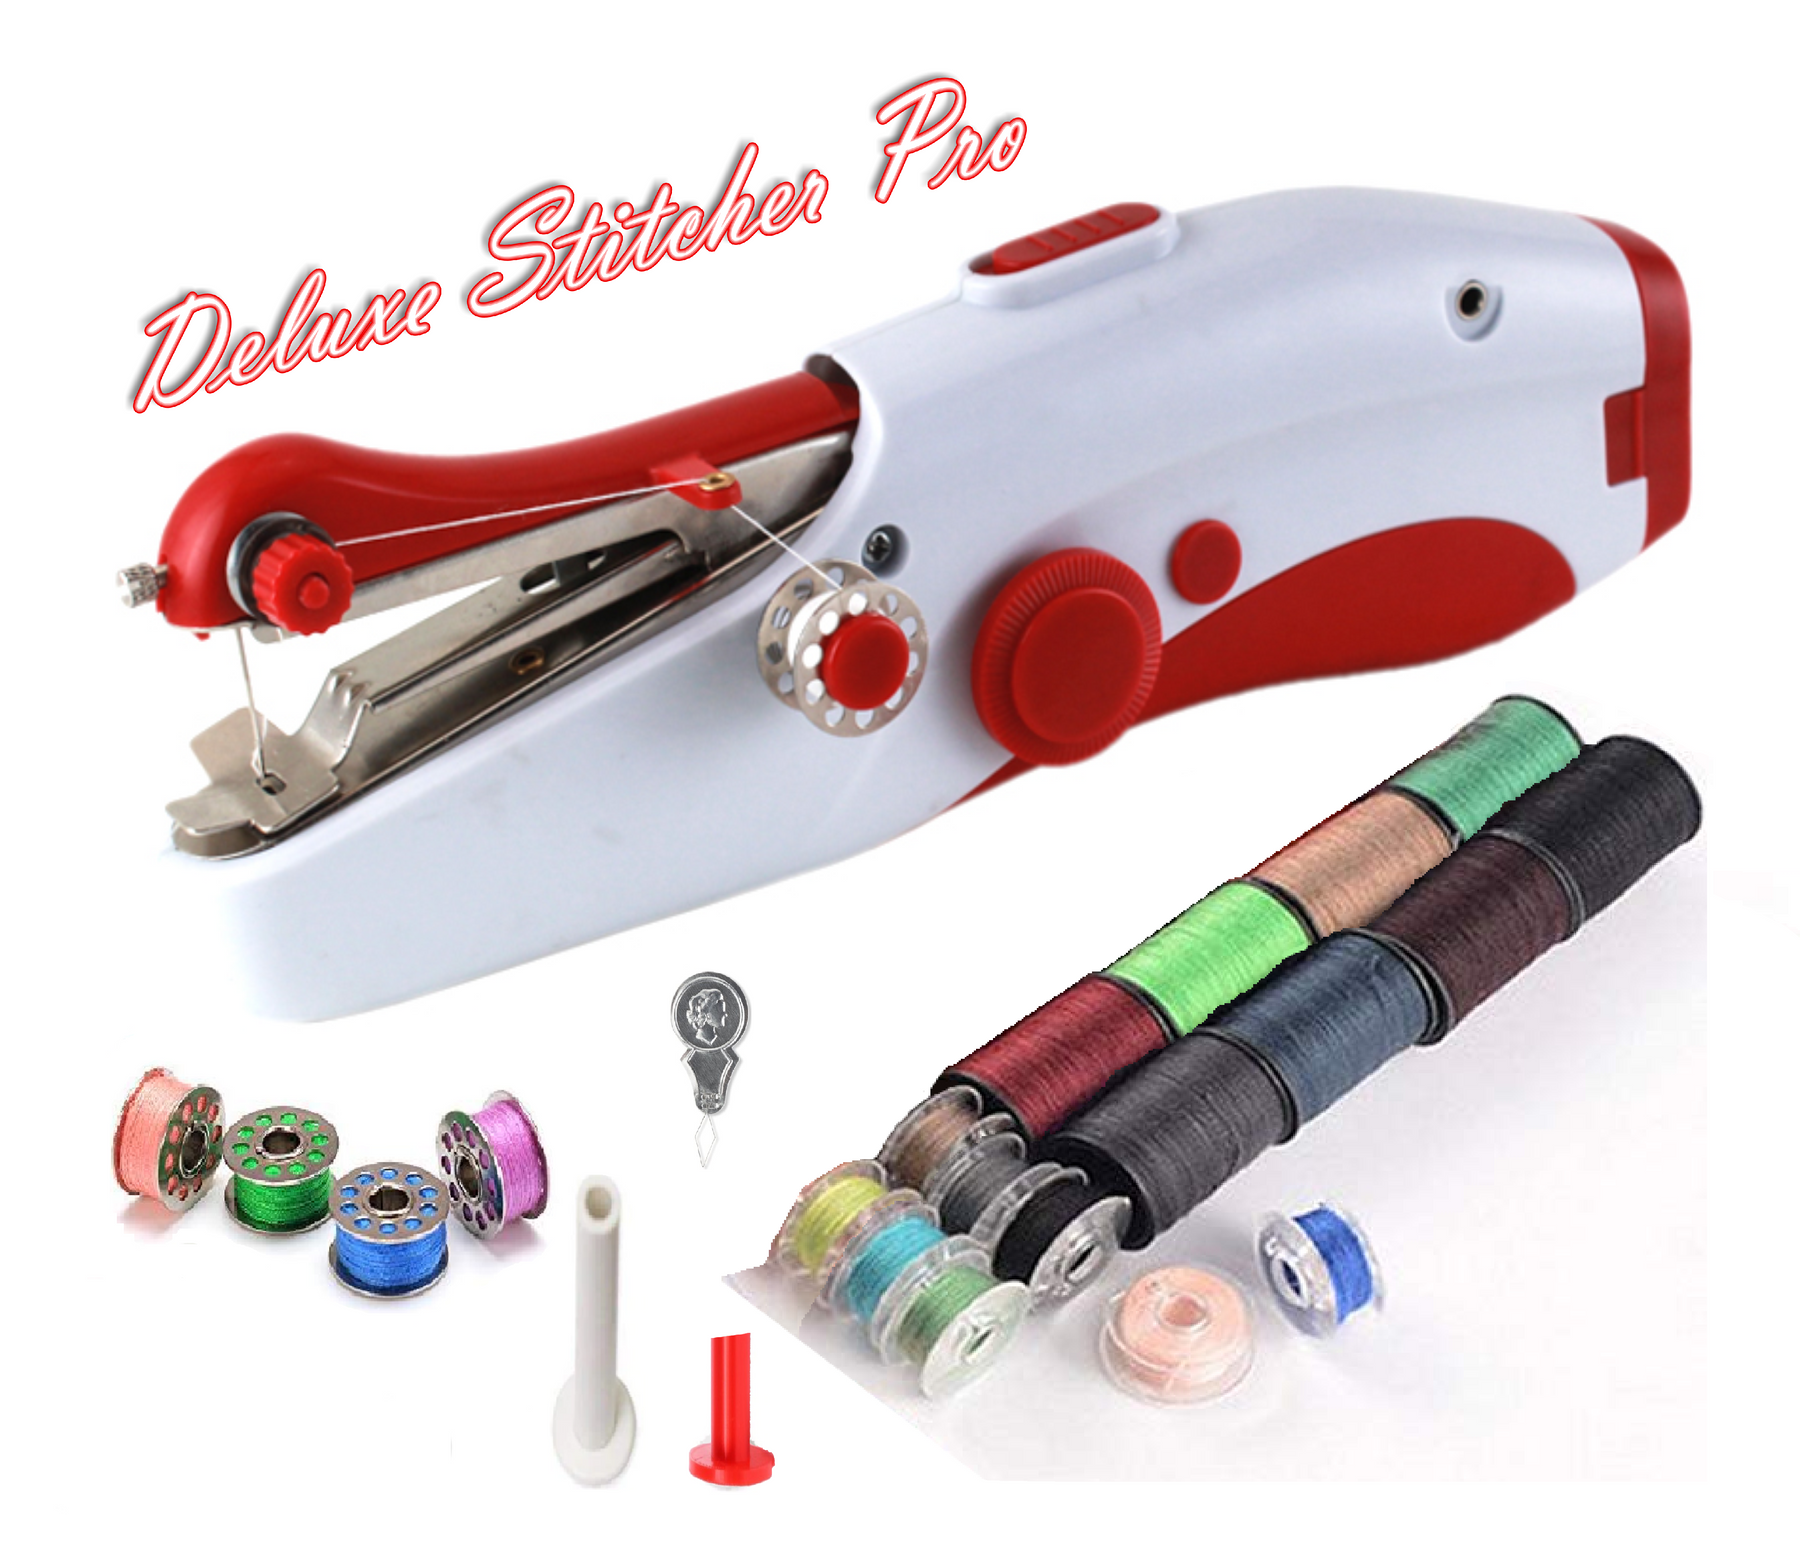 Deluxe Stitcher Pro - PREMIUM Handnaaimachine met 20 Spoelen garen en extra accessoires